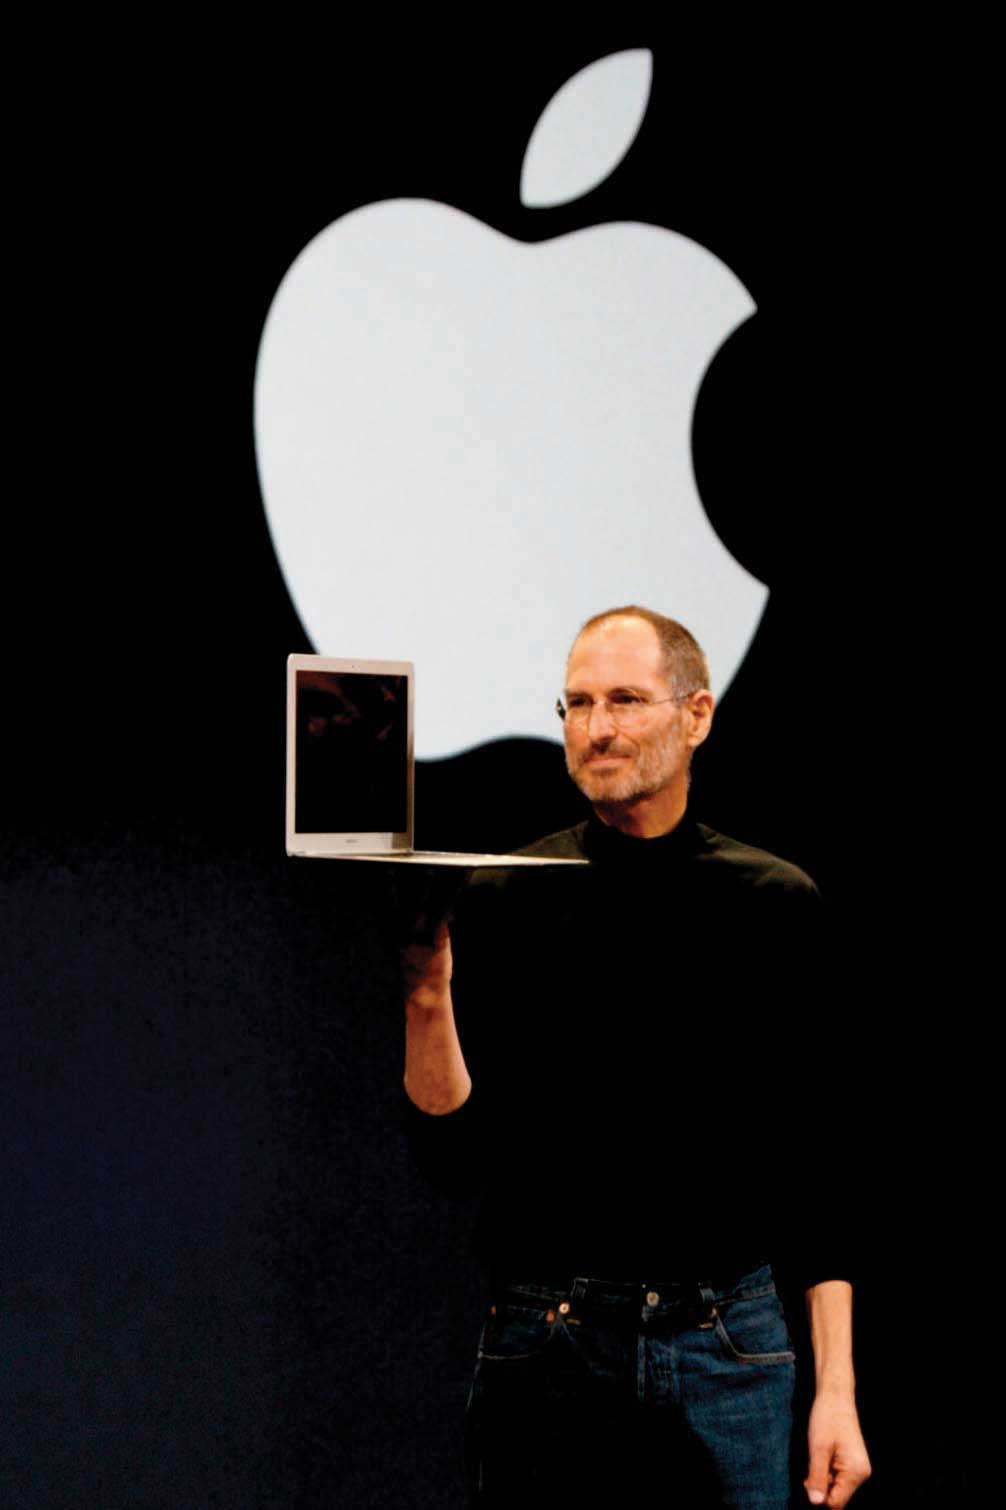 Steve Jobs presenting the Macbook Air